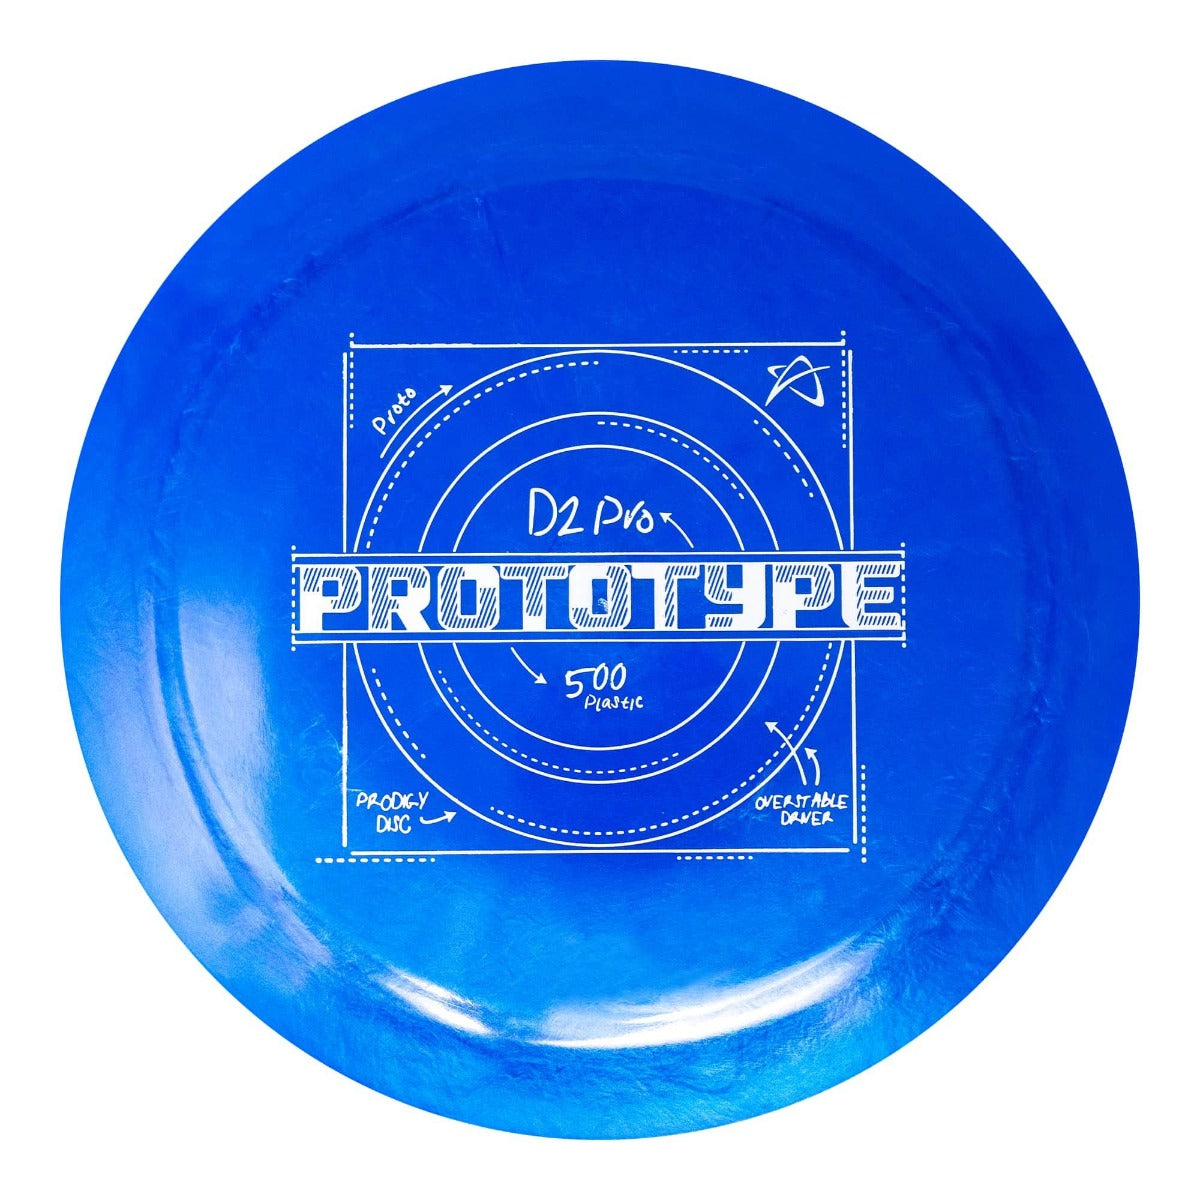 Prodigy Discs D2 Pro